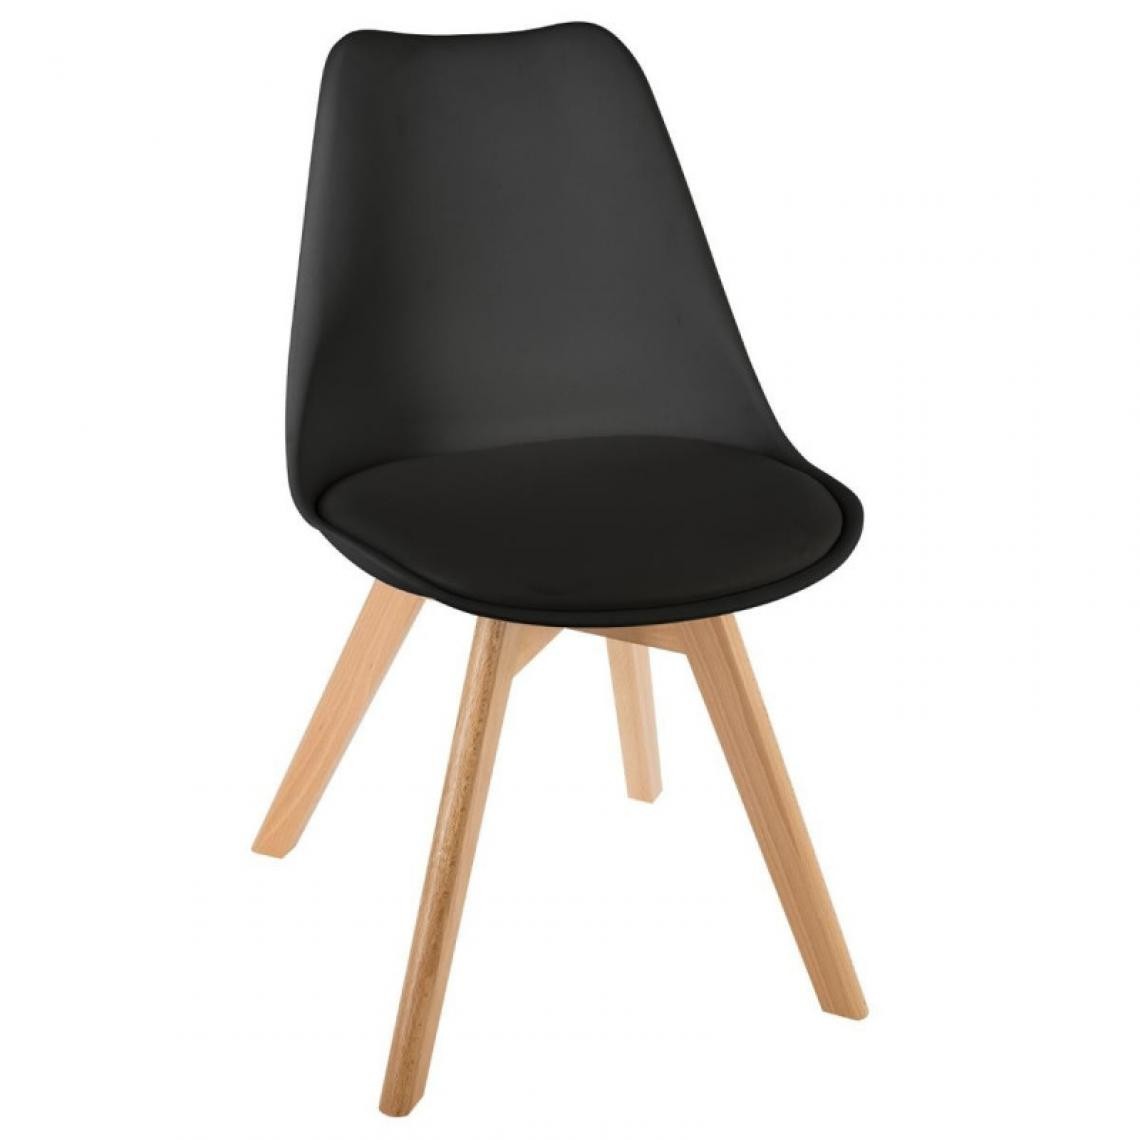 Atmosphera, Createur D'Interieur - Lot de 2 chaises style scandinave baya atmosphera - noir - Chaises